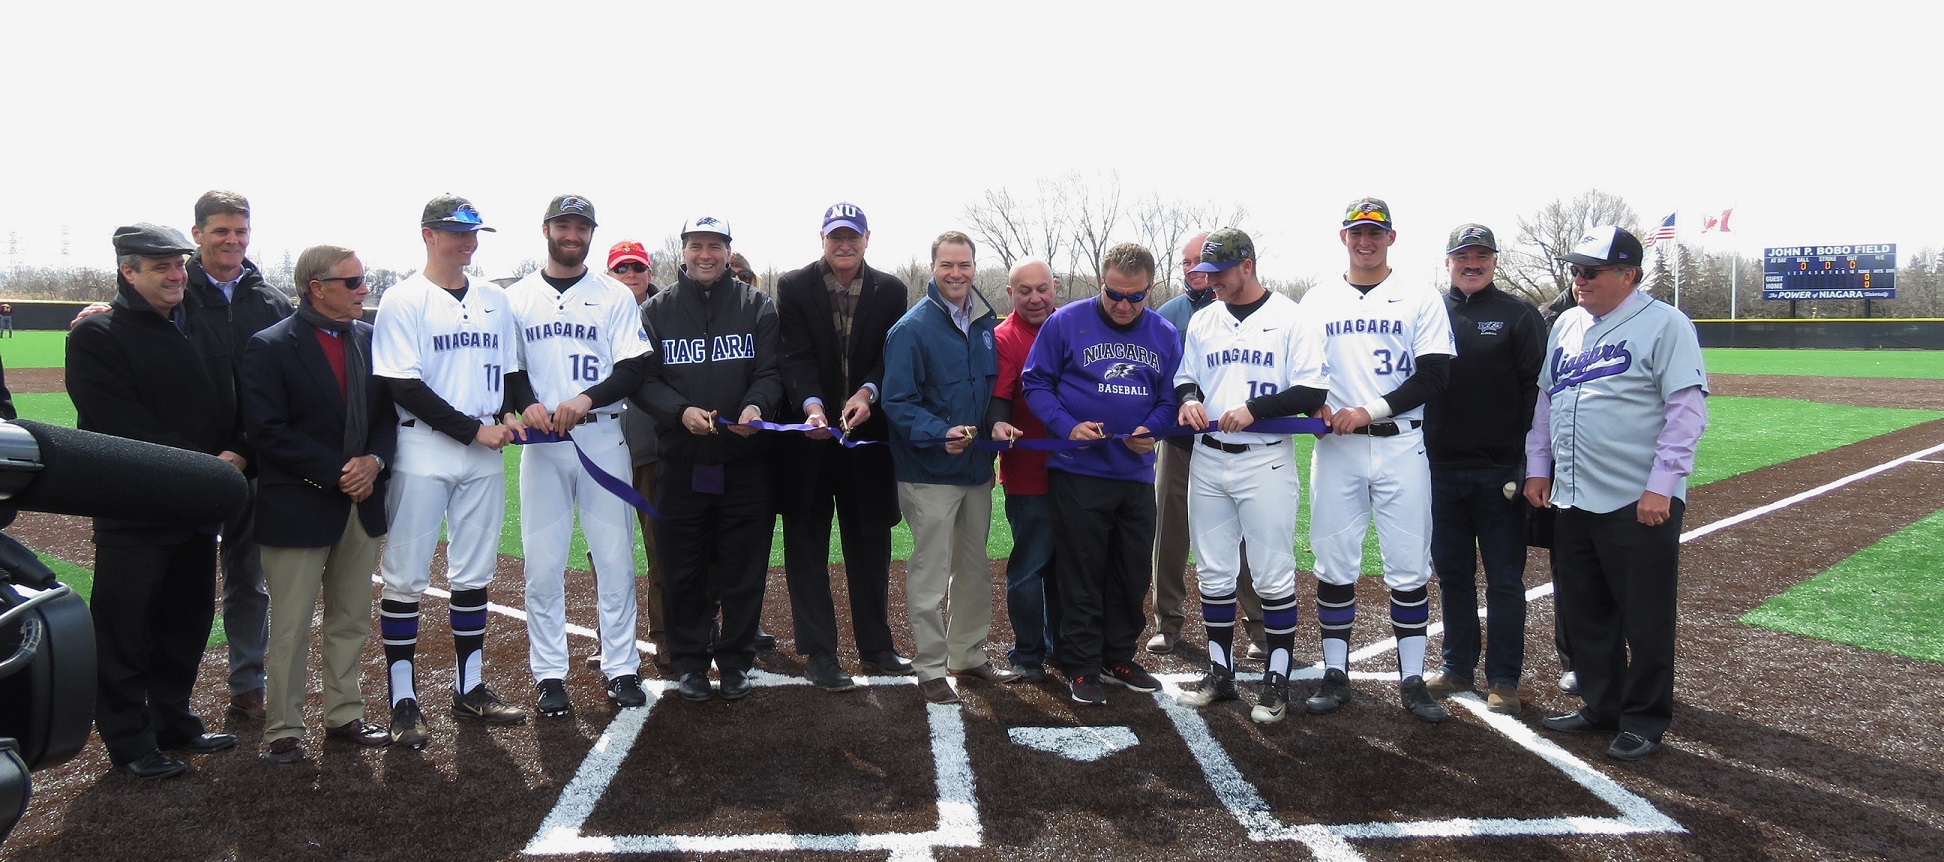 Representatives cut the ribbon to the new John P. Bobo baseball field at Niagara University. (All photos by David Yarger)